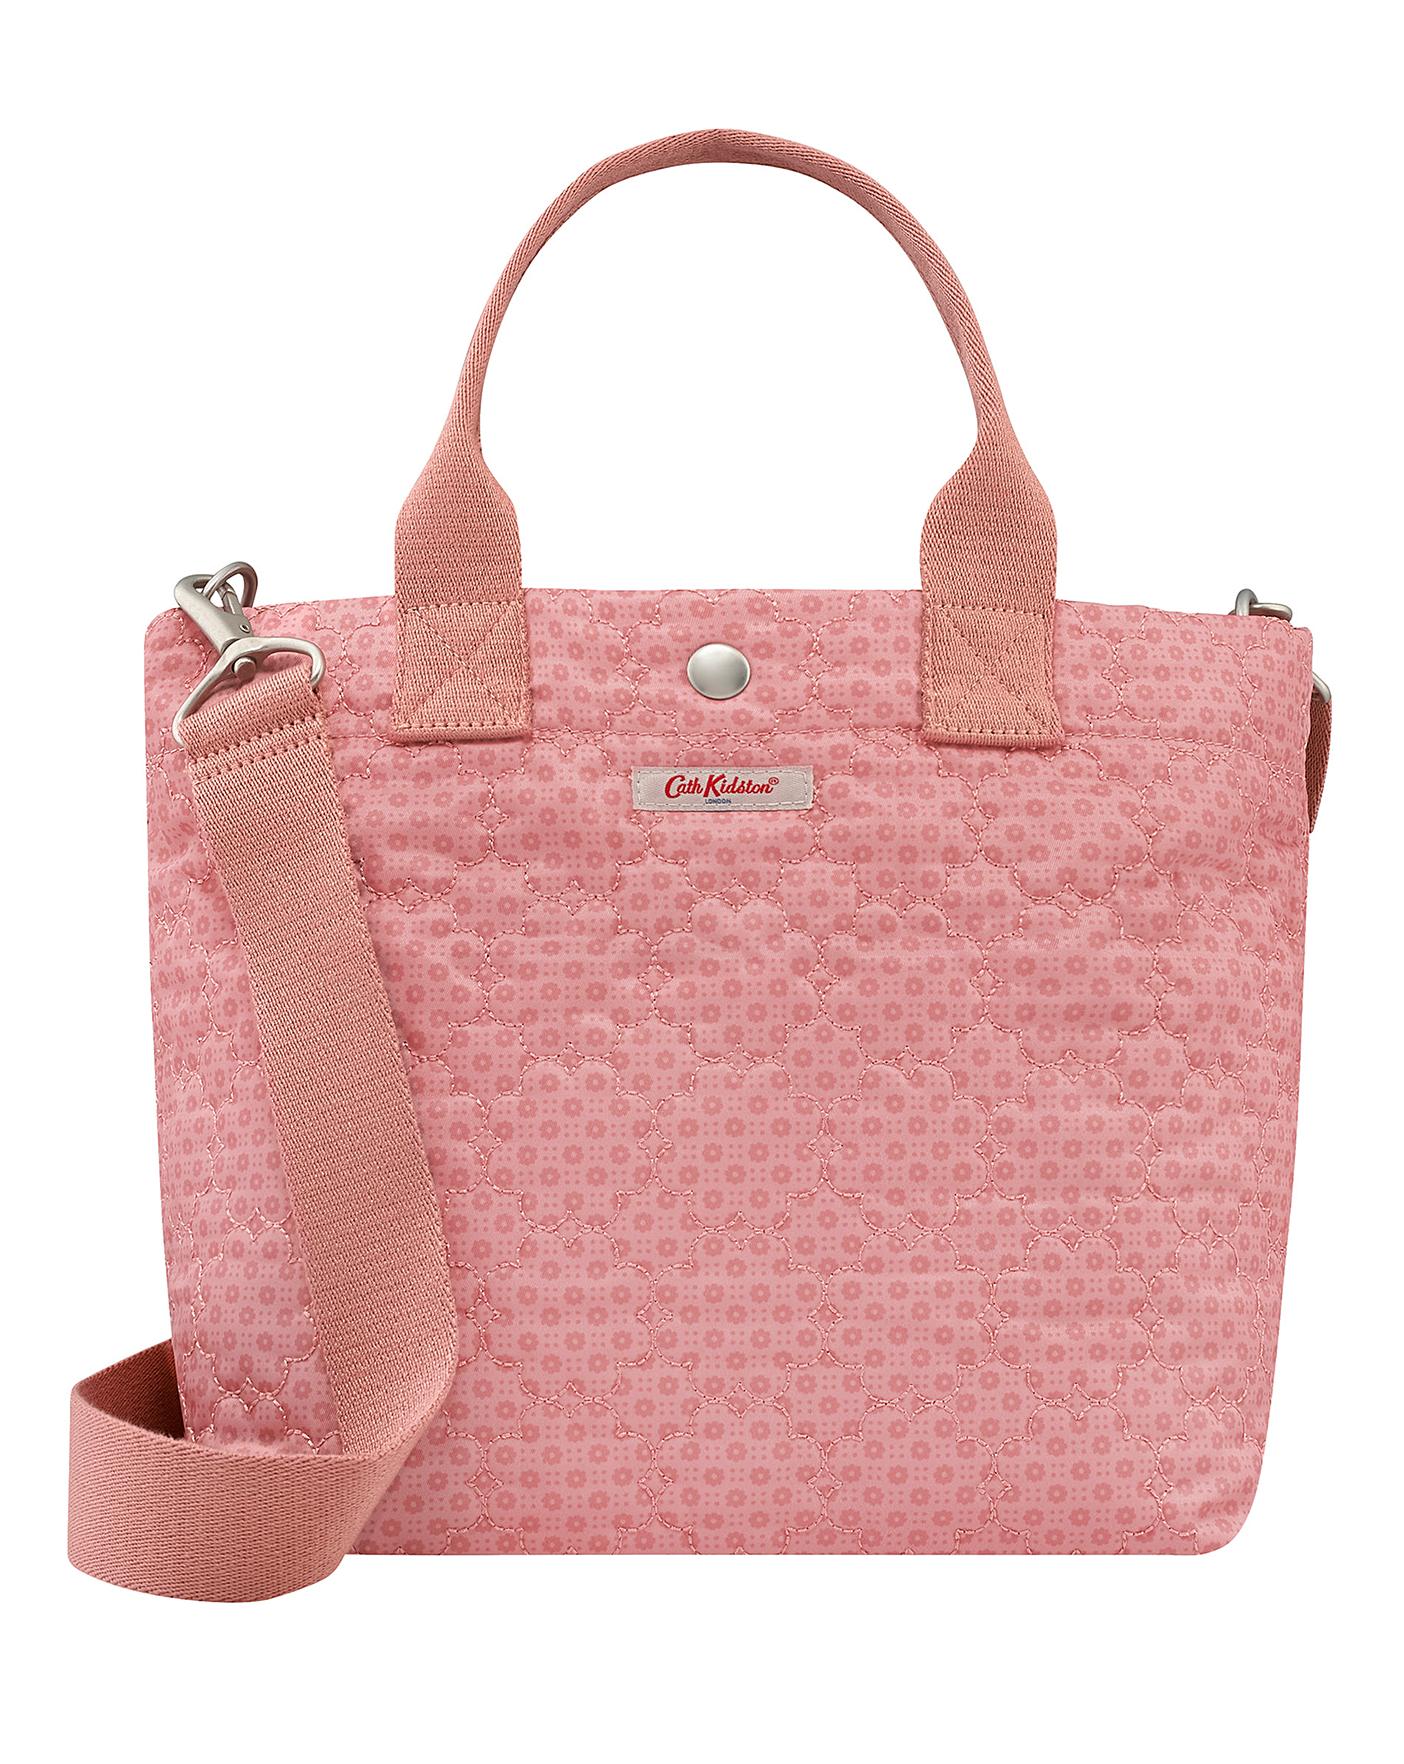 cath kidston pink bag